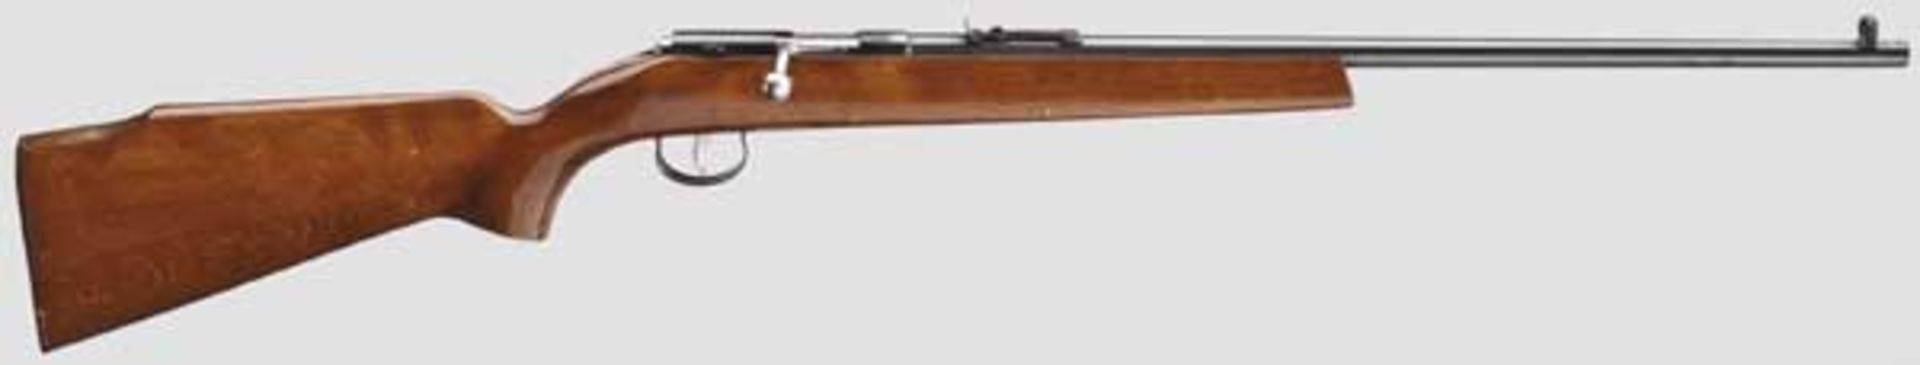 Sportgewehr Anschütz   Kal. .22 l.r., Nr. 476782. Blanker Lauf, Länge 55 cm. Dt. Beschuss.